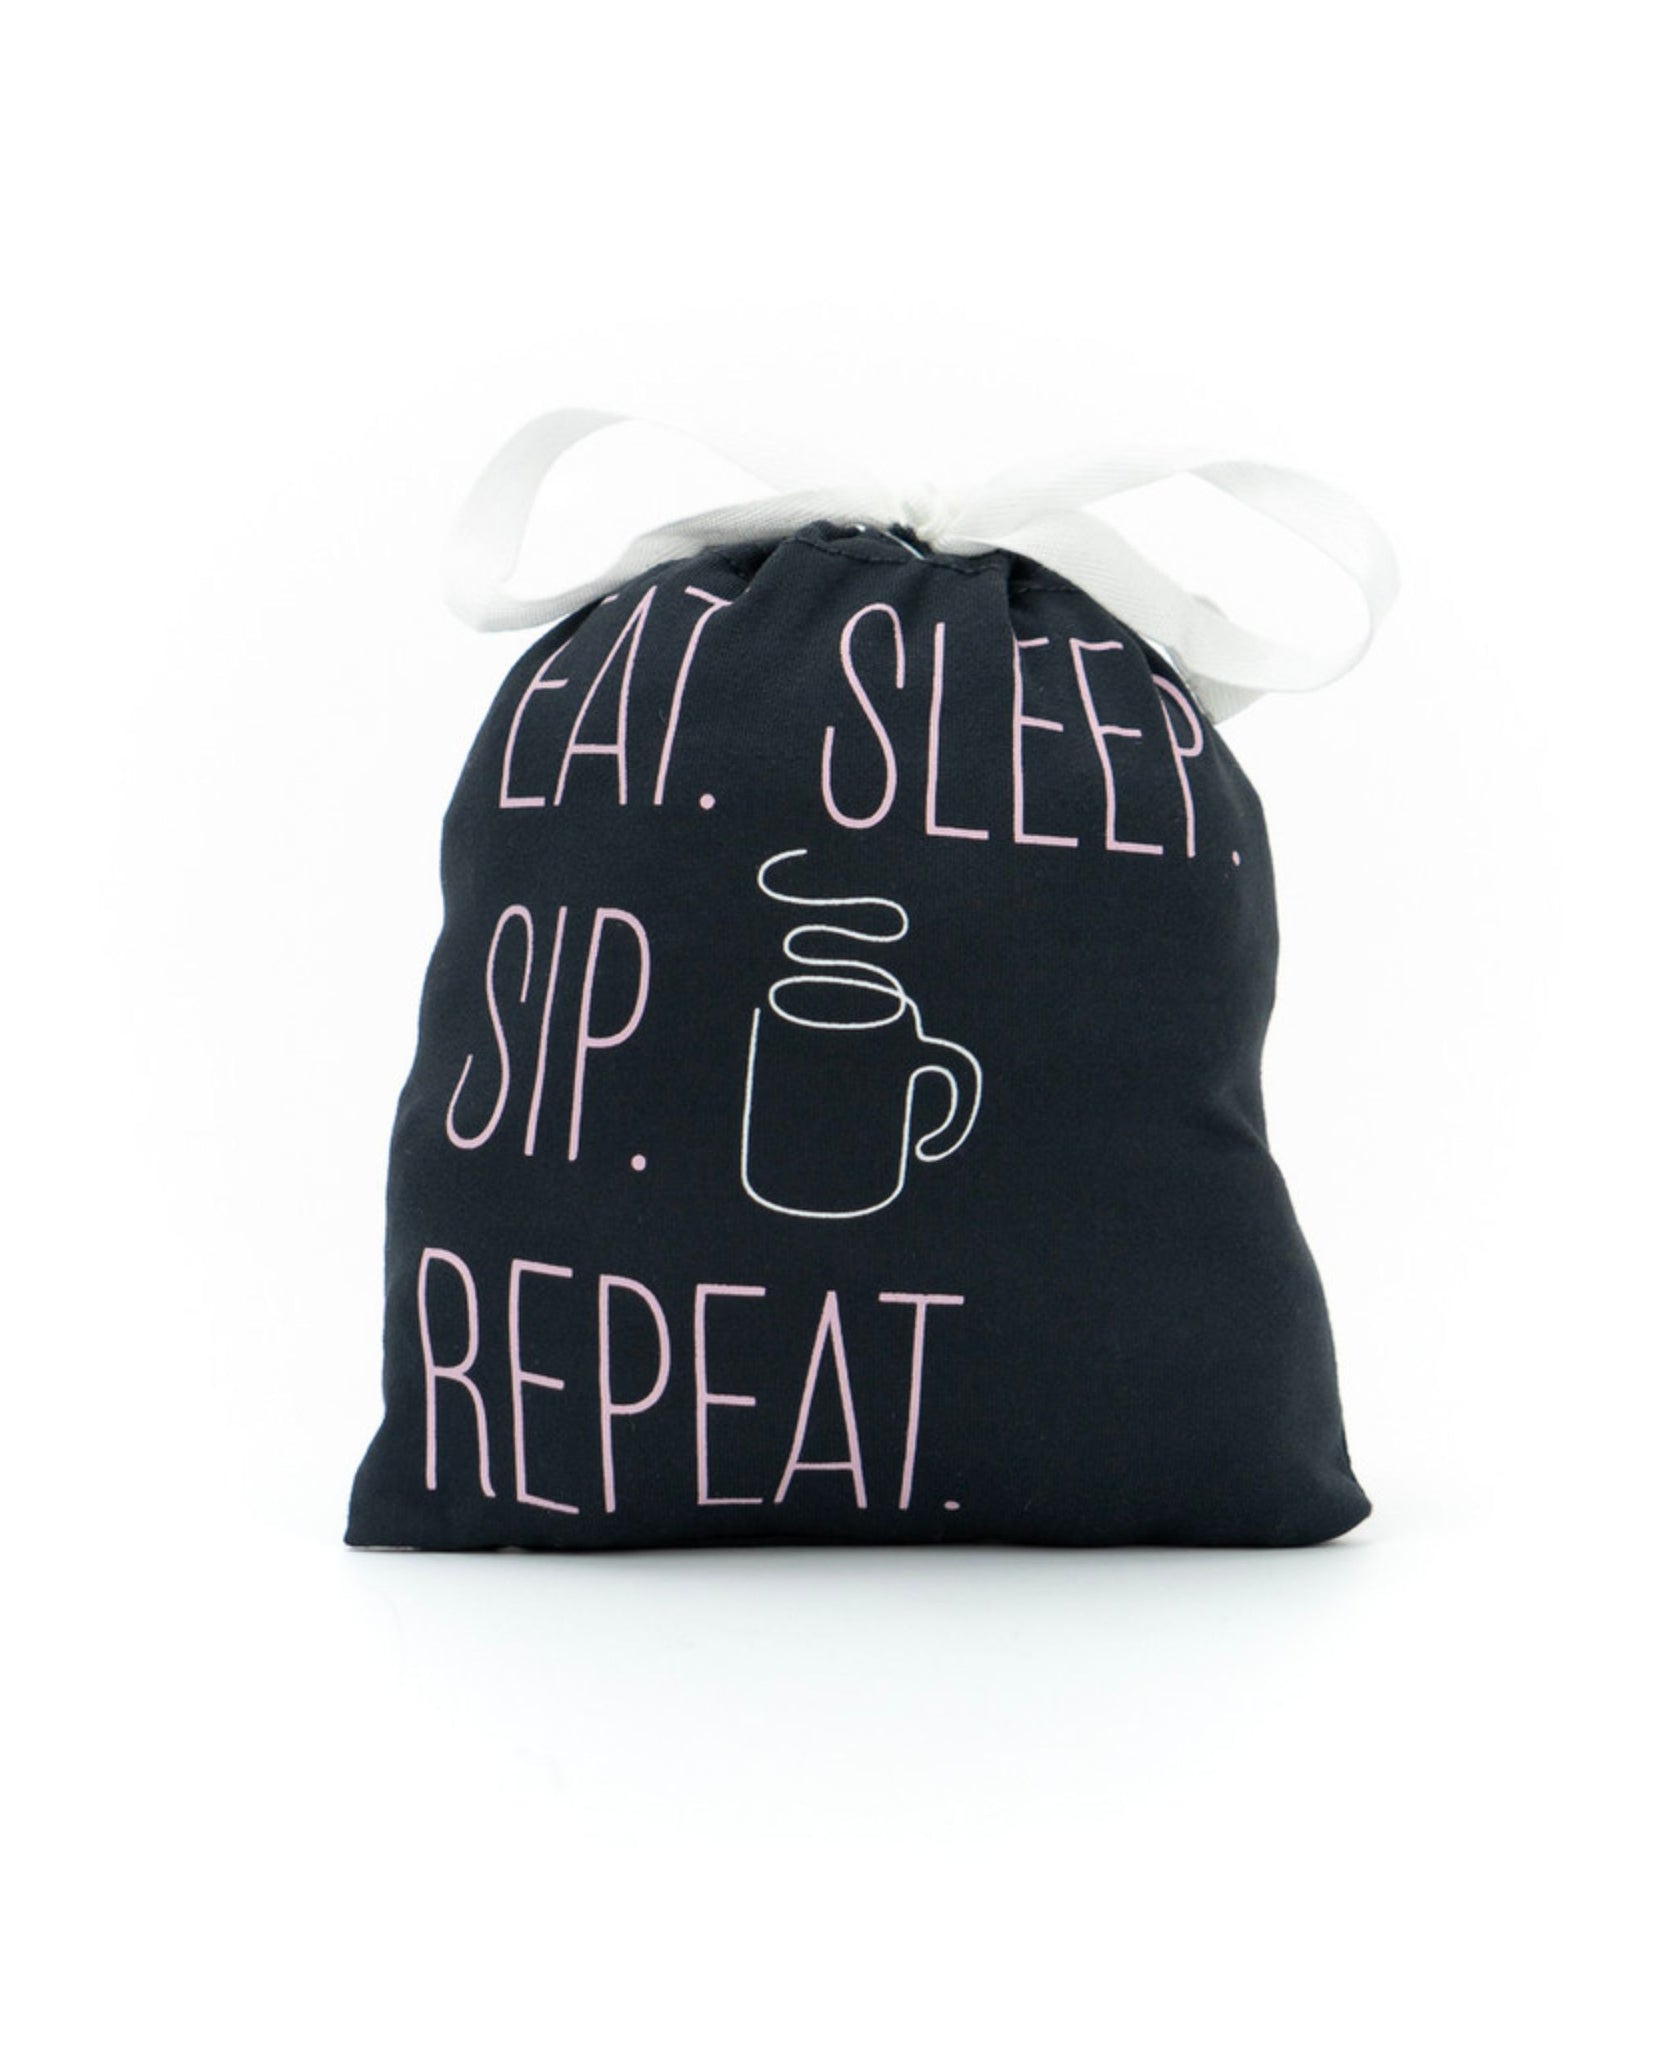 Eat. Sleep. Sip. Repeat. -- Sleep Shirt